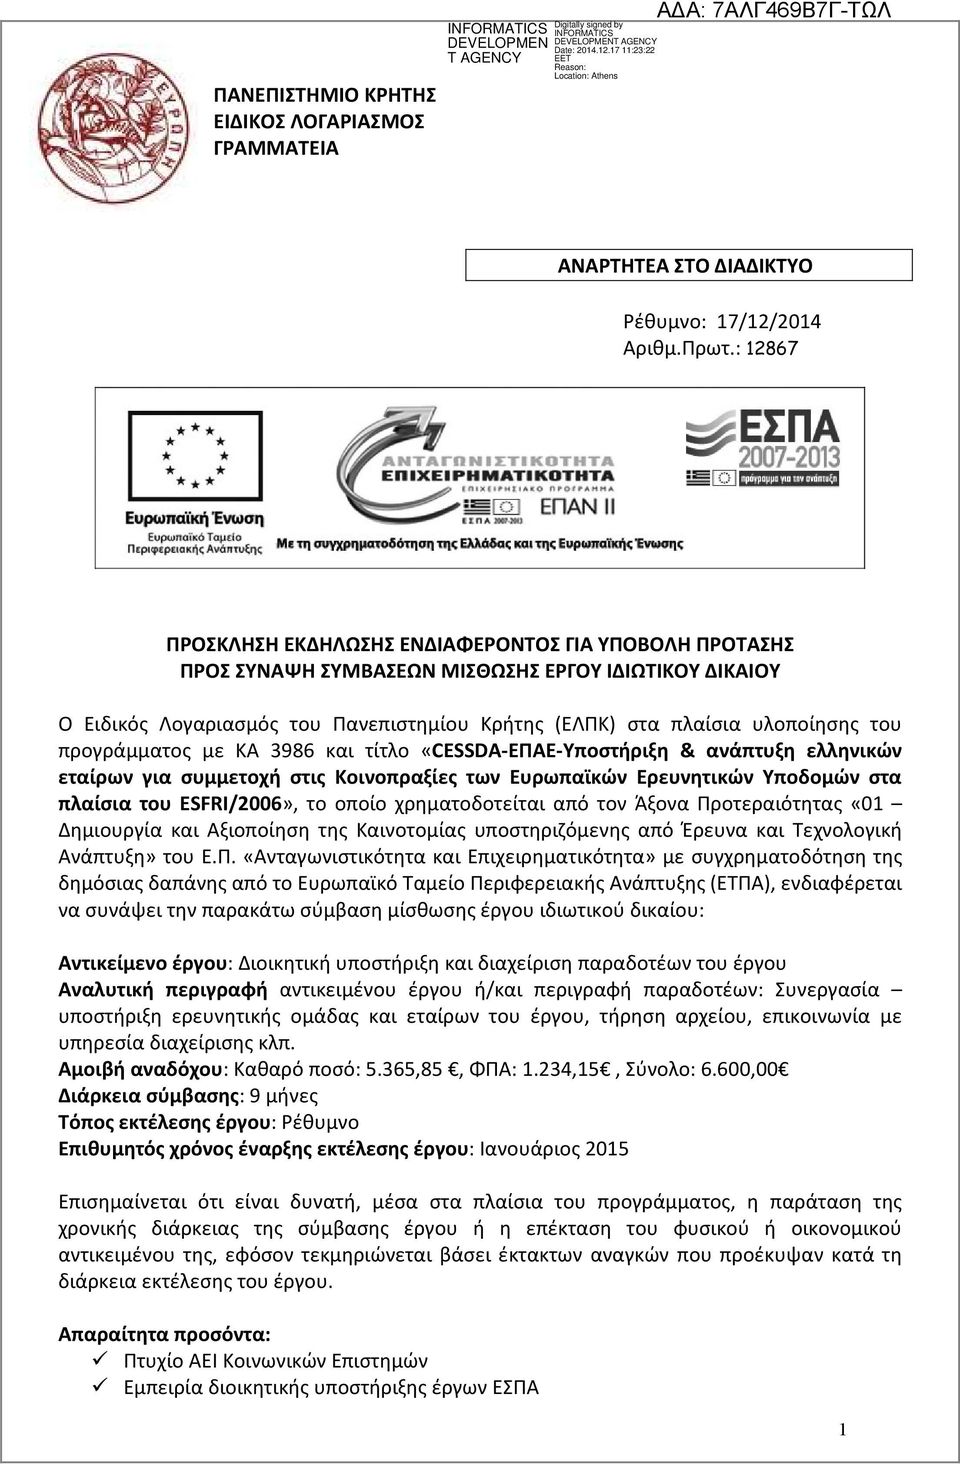 προγράμματος με ΚΑ 3986 και τίτλο «CESSDA-ΕΠΑΕ-Υποστήριξη & ανάπτυξη ελληνικών εταίρων για συμμετοχή στις Κοινοπραξίες των Ευρωπαϊκών Ερευνητικών Υποδομών στα πλαίσια του ESFRI/2006», το οποίο